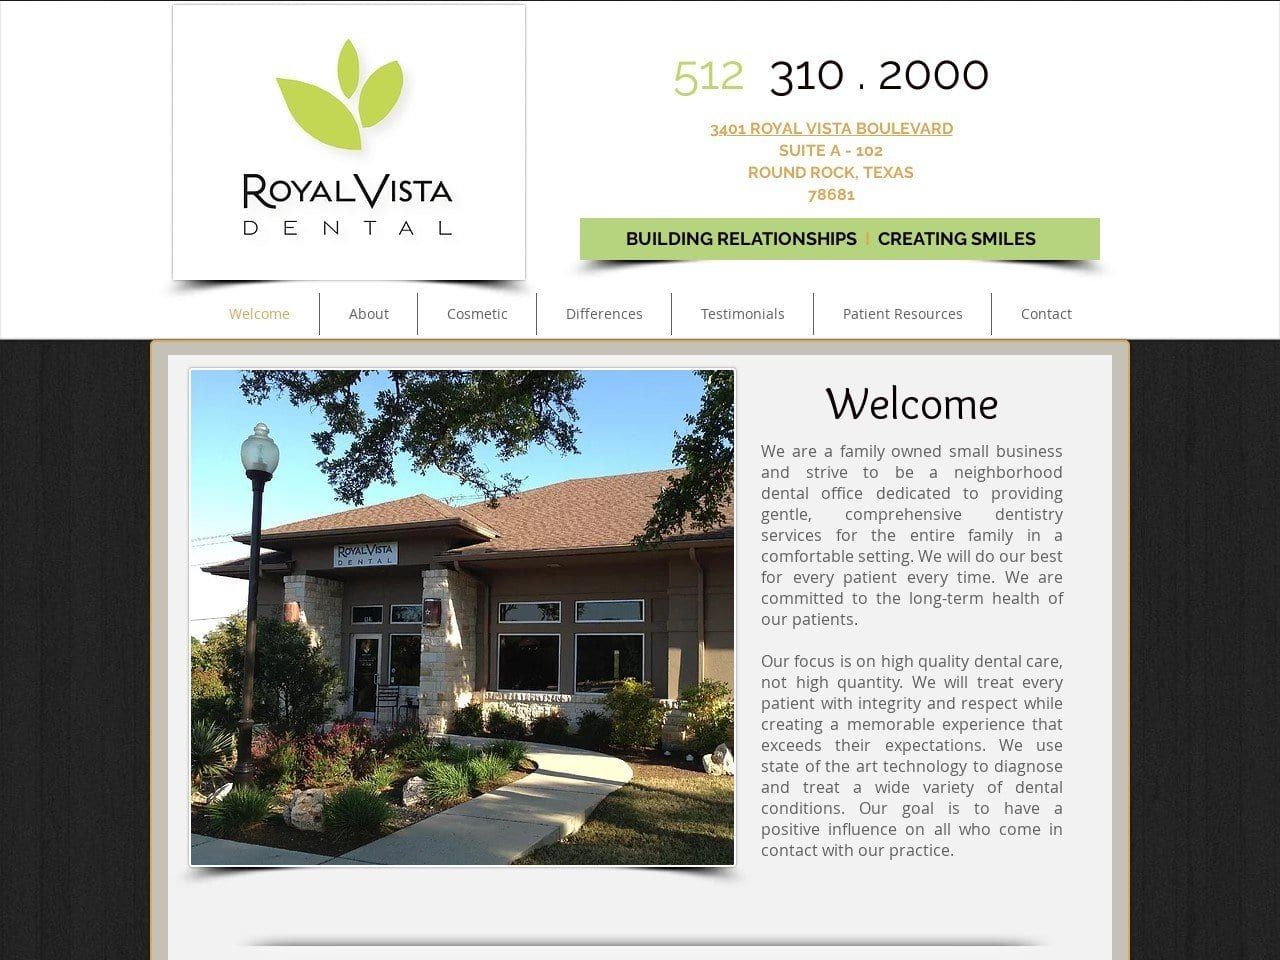 Royal Vista Dental Website Screenshot from royalvistadental.com